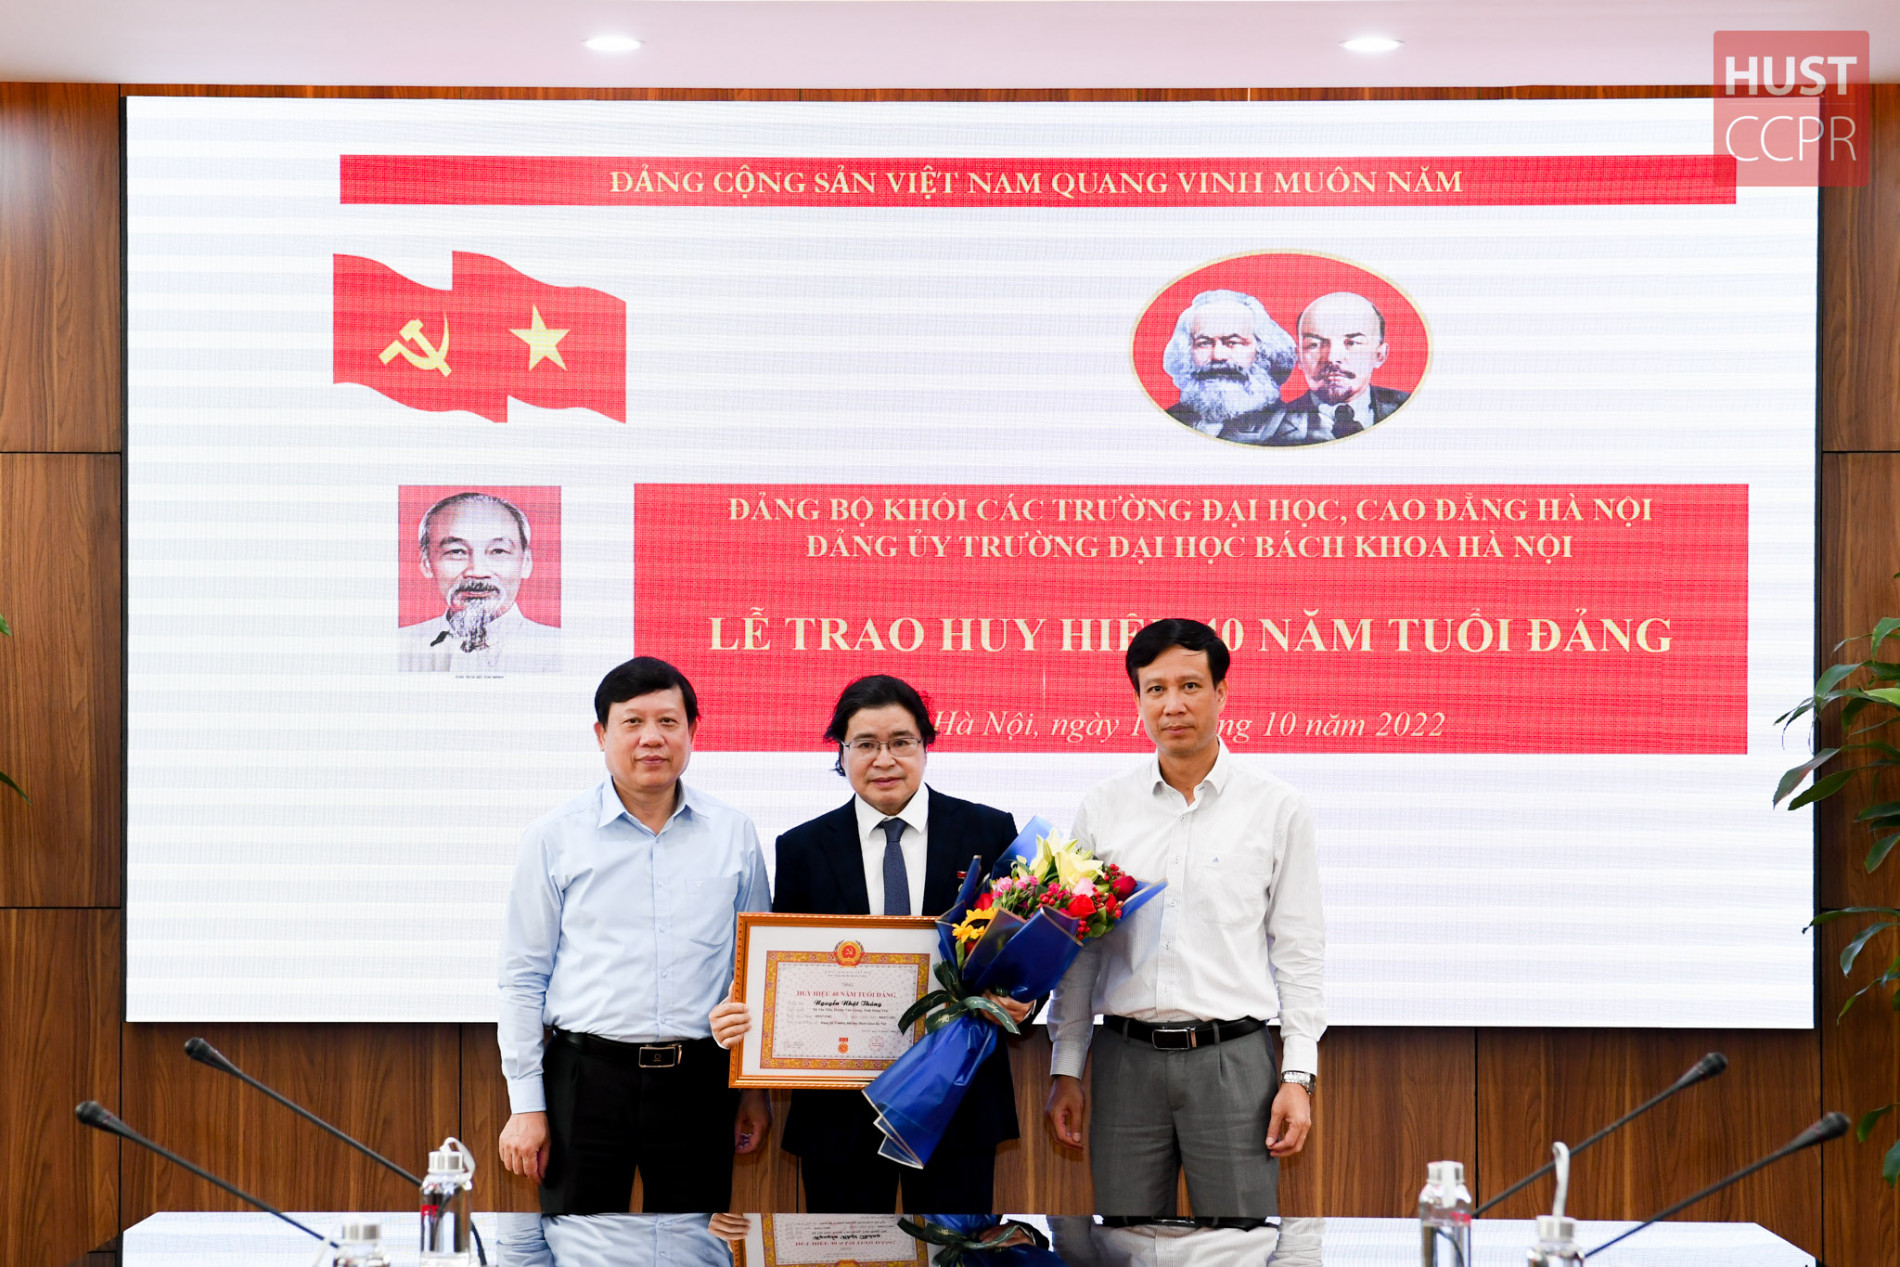 Đảng viên Bách khoa Hà Nội nhận huy hiệu 40 năm tuổi Đảng